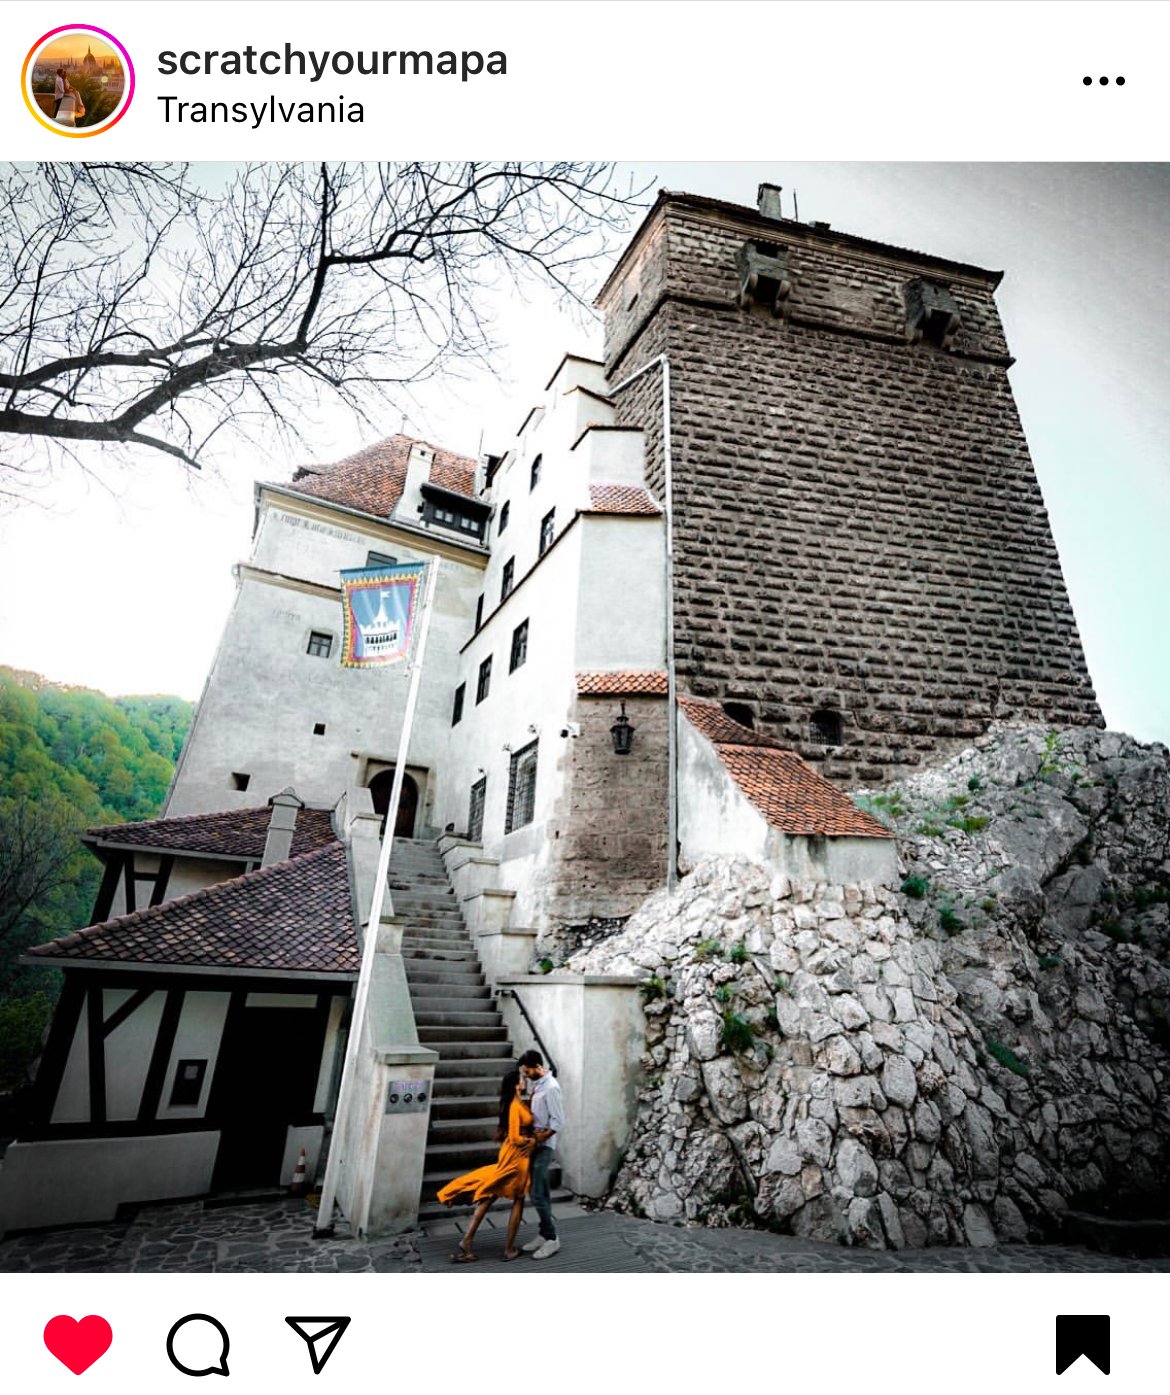 Bran Castle, Transylvania in Romania